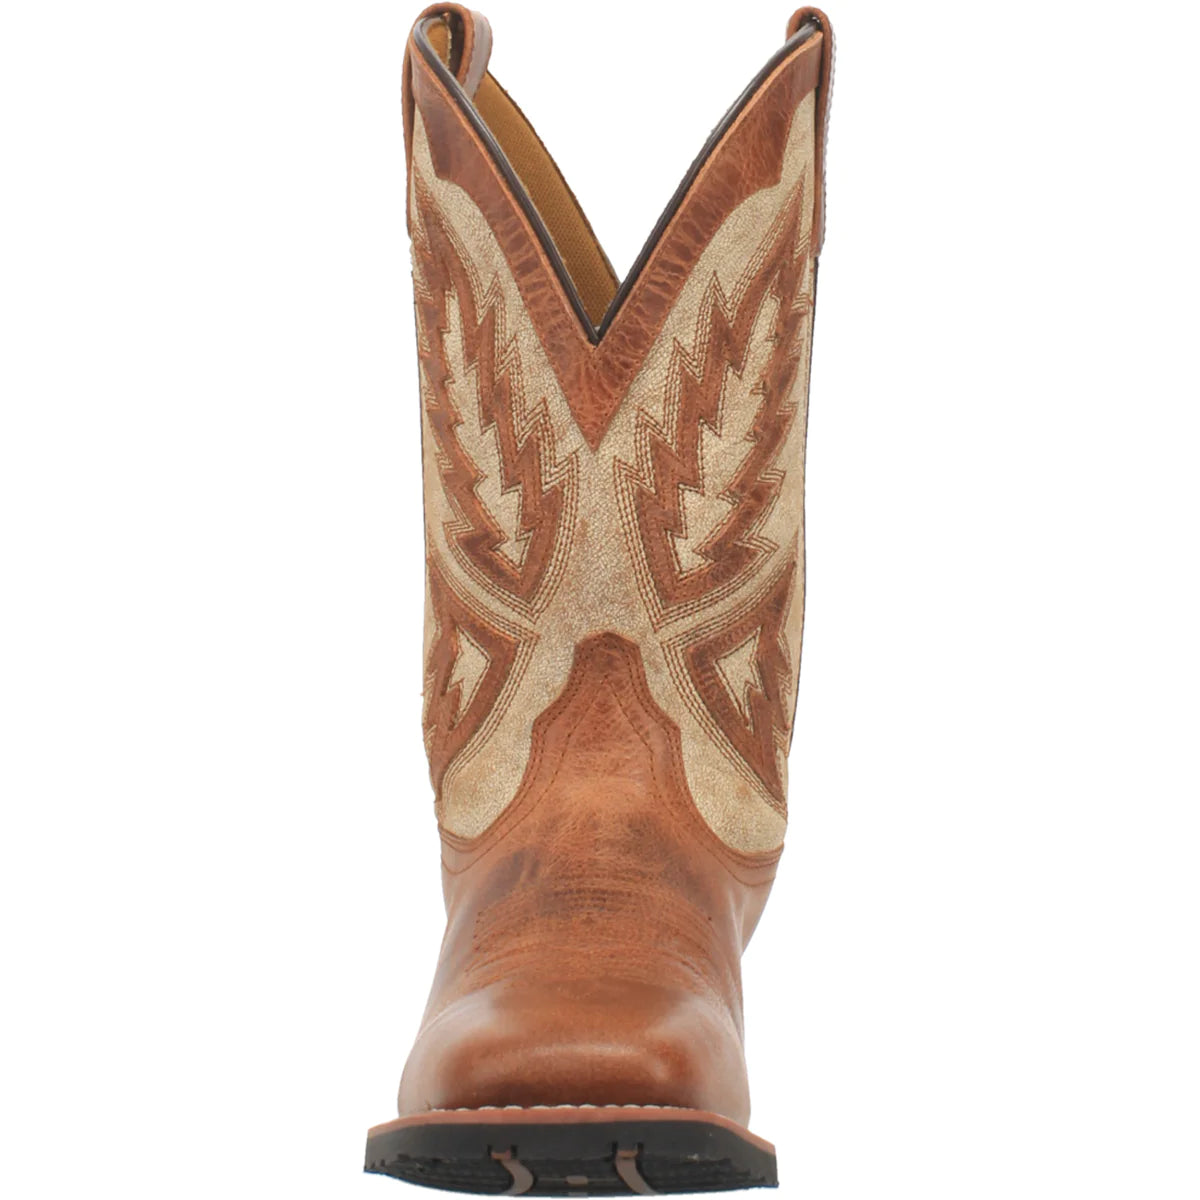 Laredo Men's Koufax Leather Boot 7862